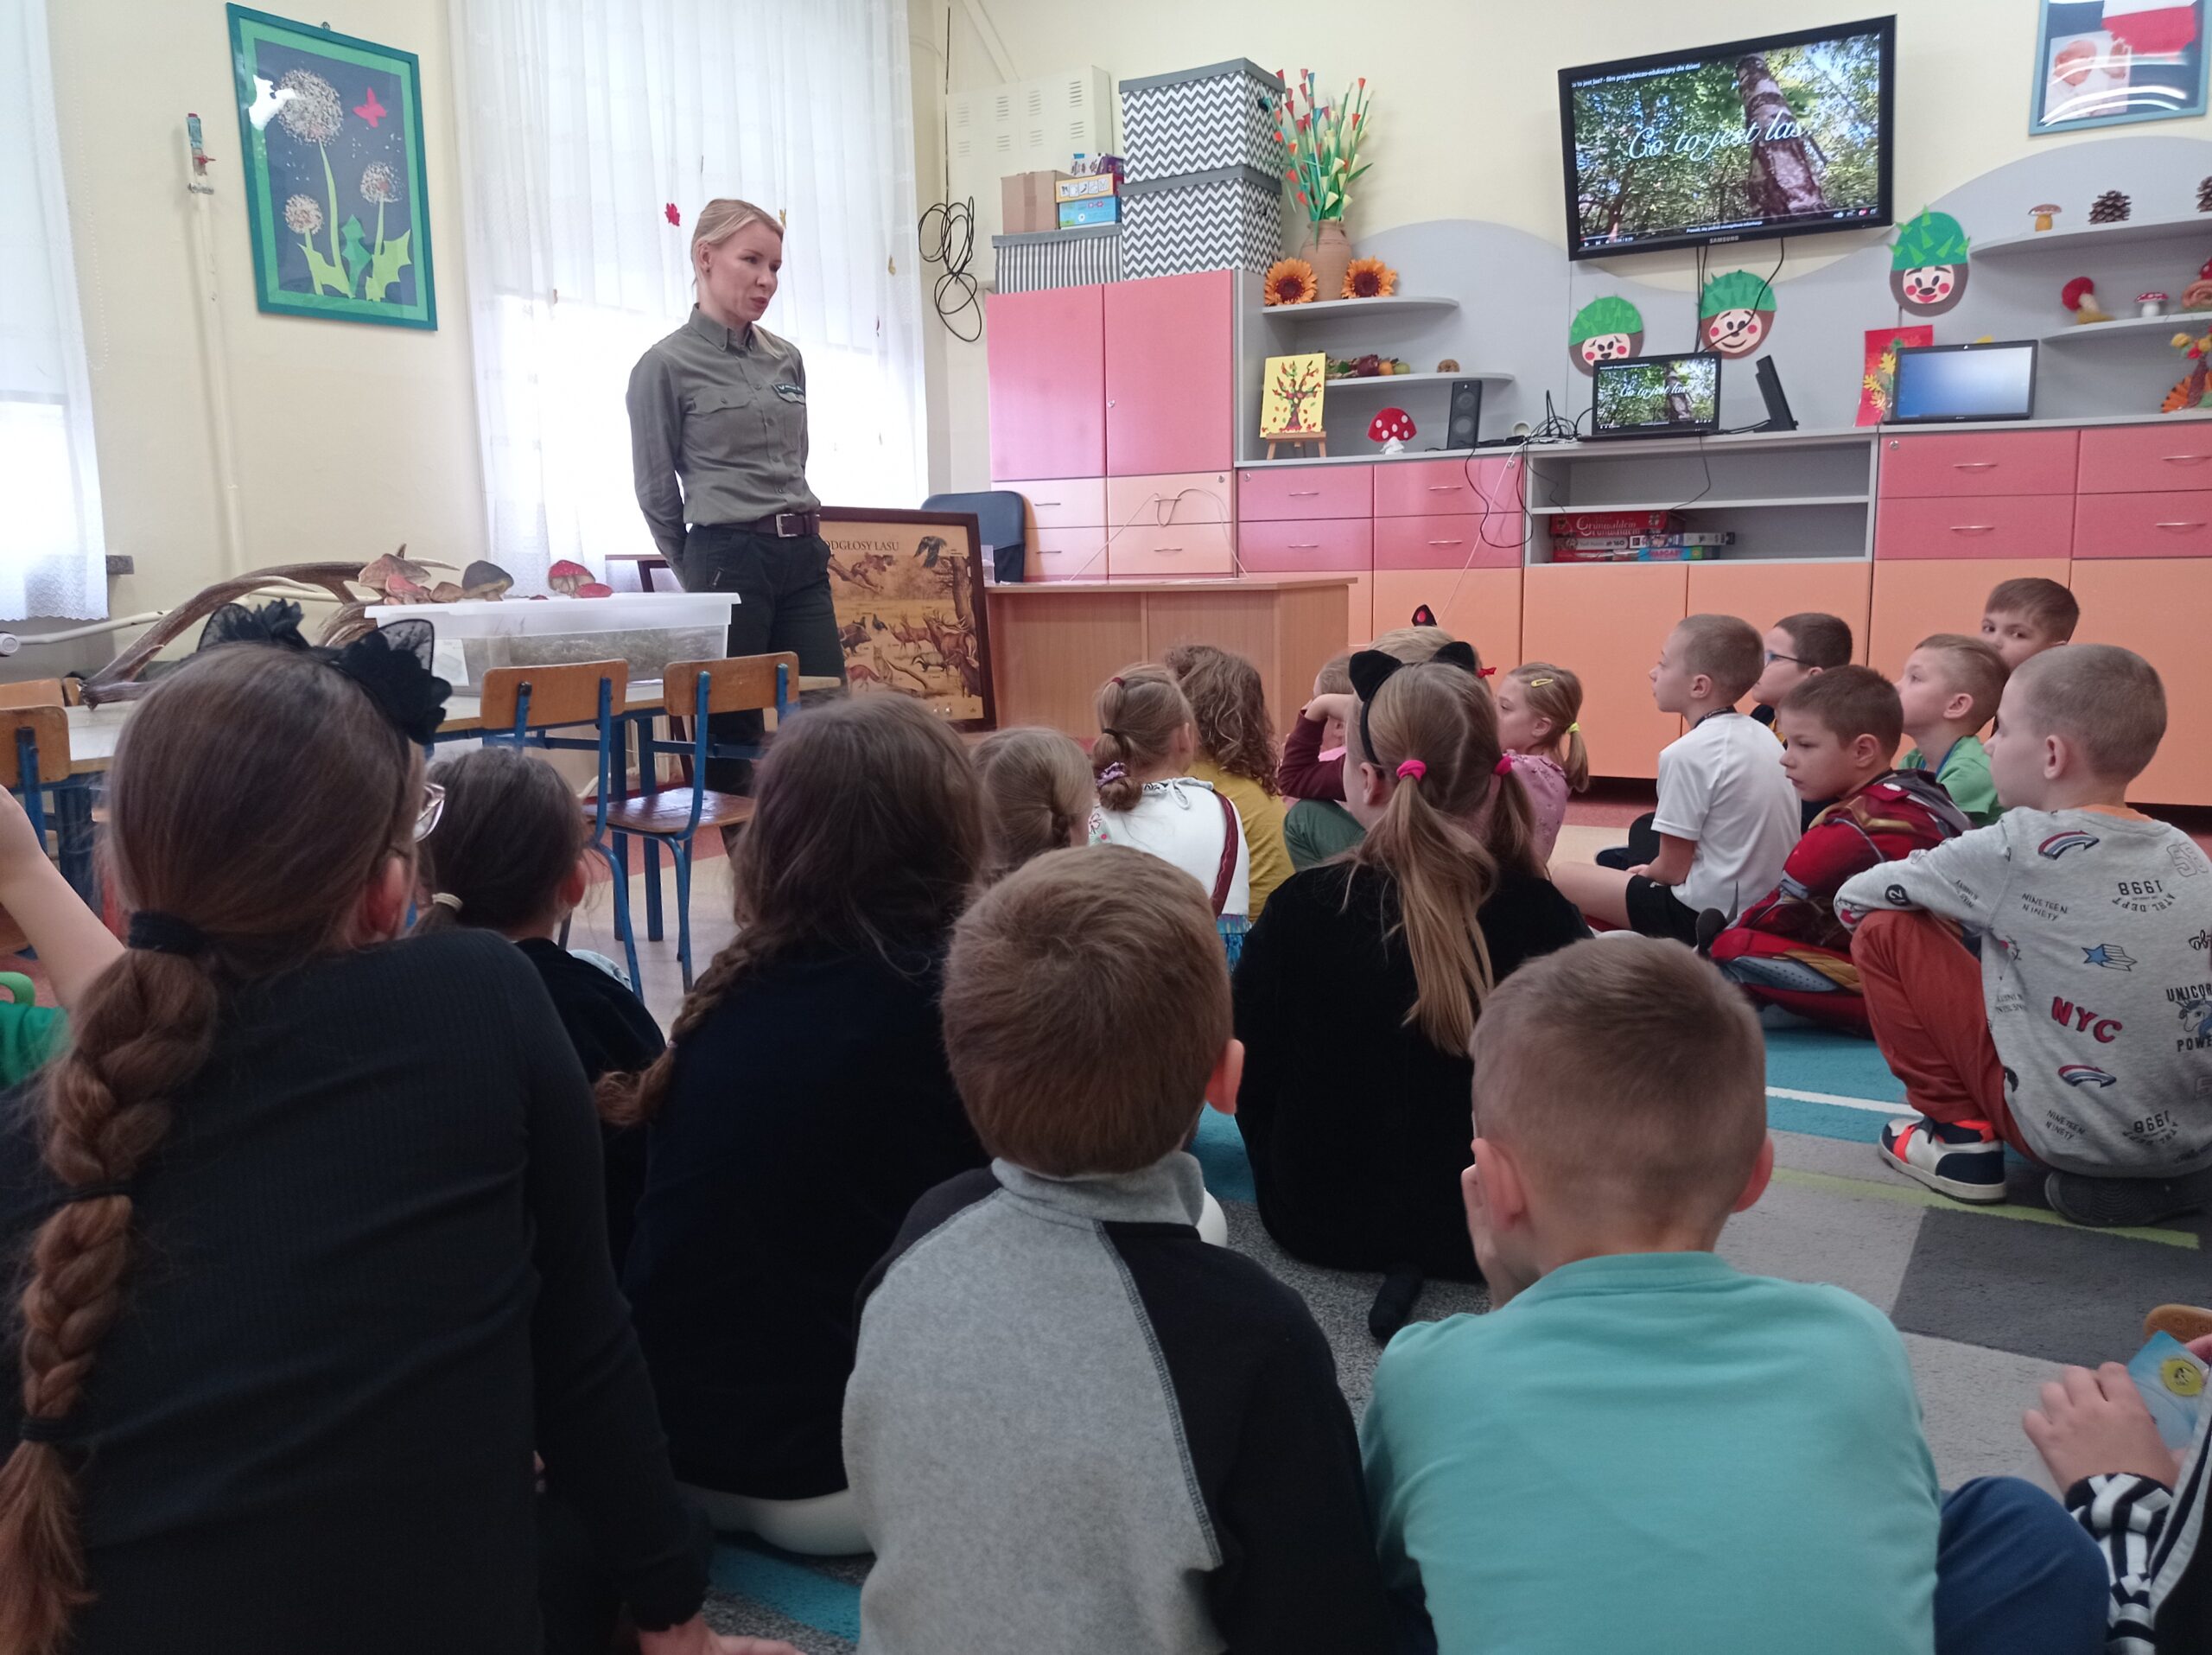 Zajęcia edukacyjne. Pani leśnik opowiada uczniom o zwierzętach zamieszkujących polskie lasy.